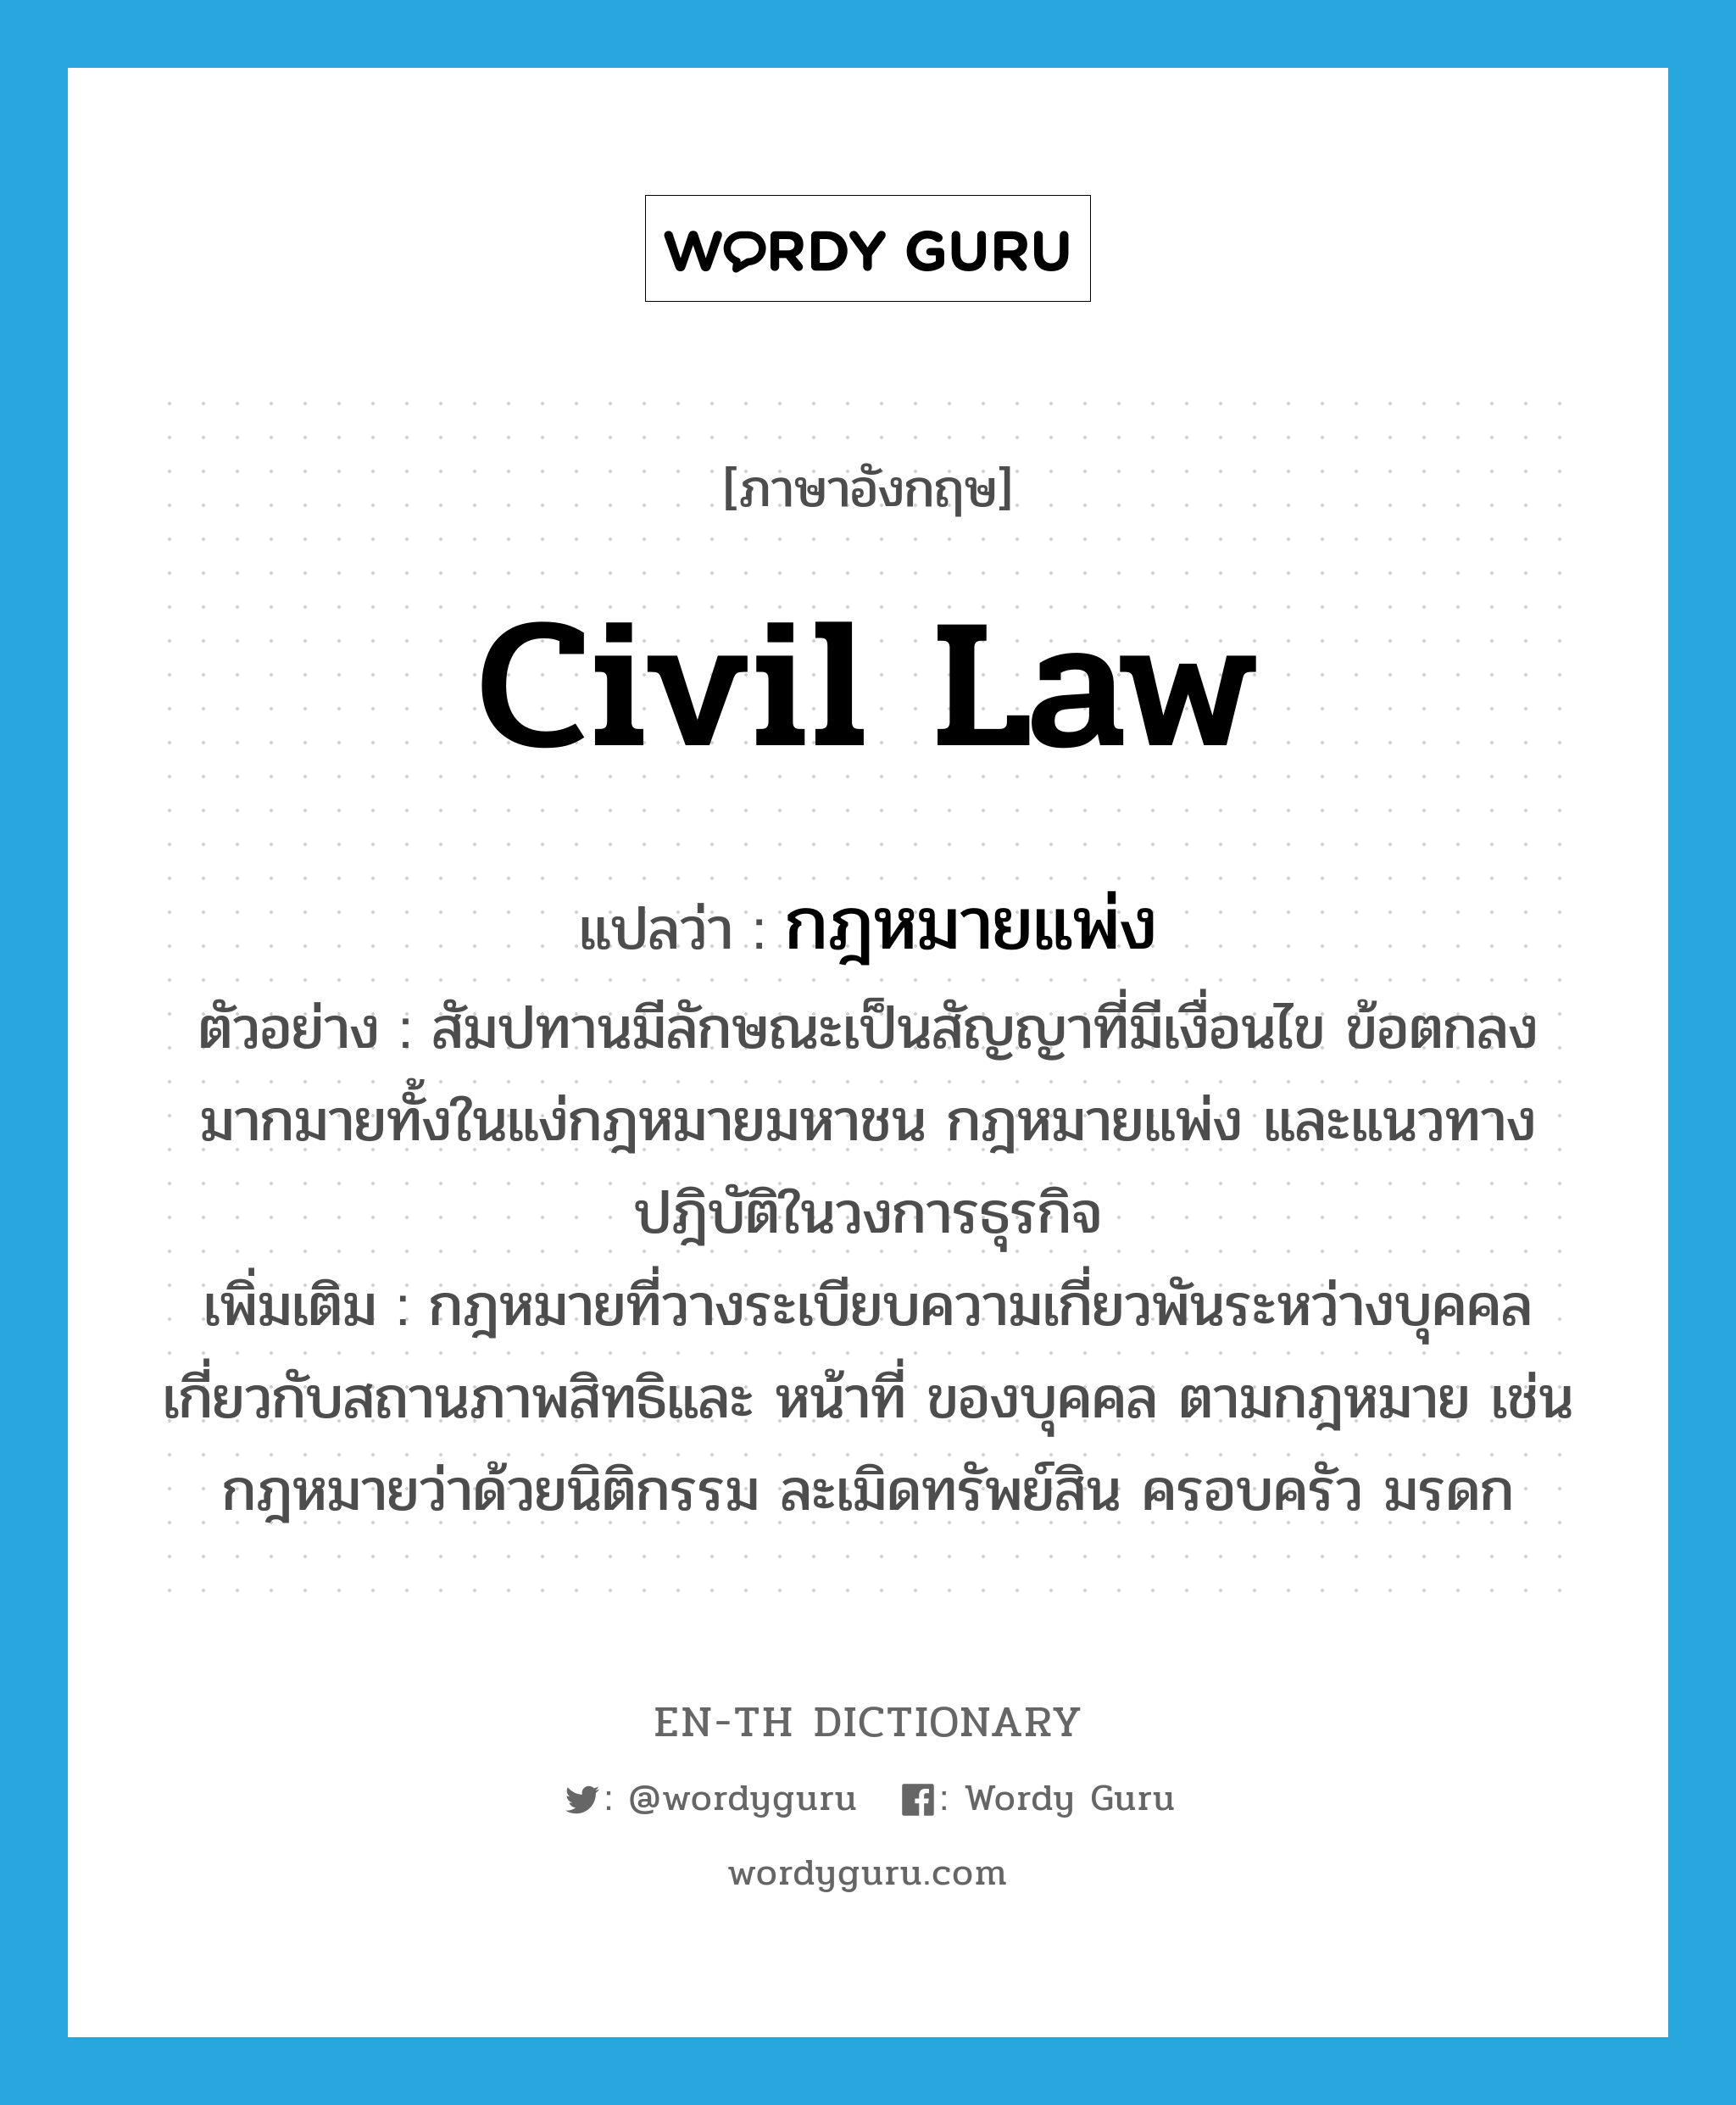 กฎหมายแพ่ง ภาษาอังกฤษ?, คำศัพท์ภาษาอังกฤษ กฎหมายแพ่ง แปลว่า civil law ประเภท N ตัวอย่าง สัมปทานมีลักษณะเป็นสัญญาที่มีเงื่อนไข ข้อตกลงมากมายทั้งในแง่กฎหมายมหาชน กฎหมายแพ่ง และแนวทางปฎิบัติในวงการธุรกิจ เพิ่มเติม กฎหมายที่วางระเบียบความเกี่ยวพันระหว่างบุคคล เกี่ยวกับสถานภาพสิทธิและ หน้าที่ ของบุคคล ตามกฎหมาย เช่น กฎหมายว่าด้วยนิติกรรม ละเมิดทรัพย์สิน ครอบครัว มรดก หมวด N